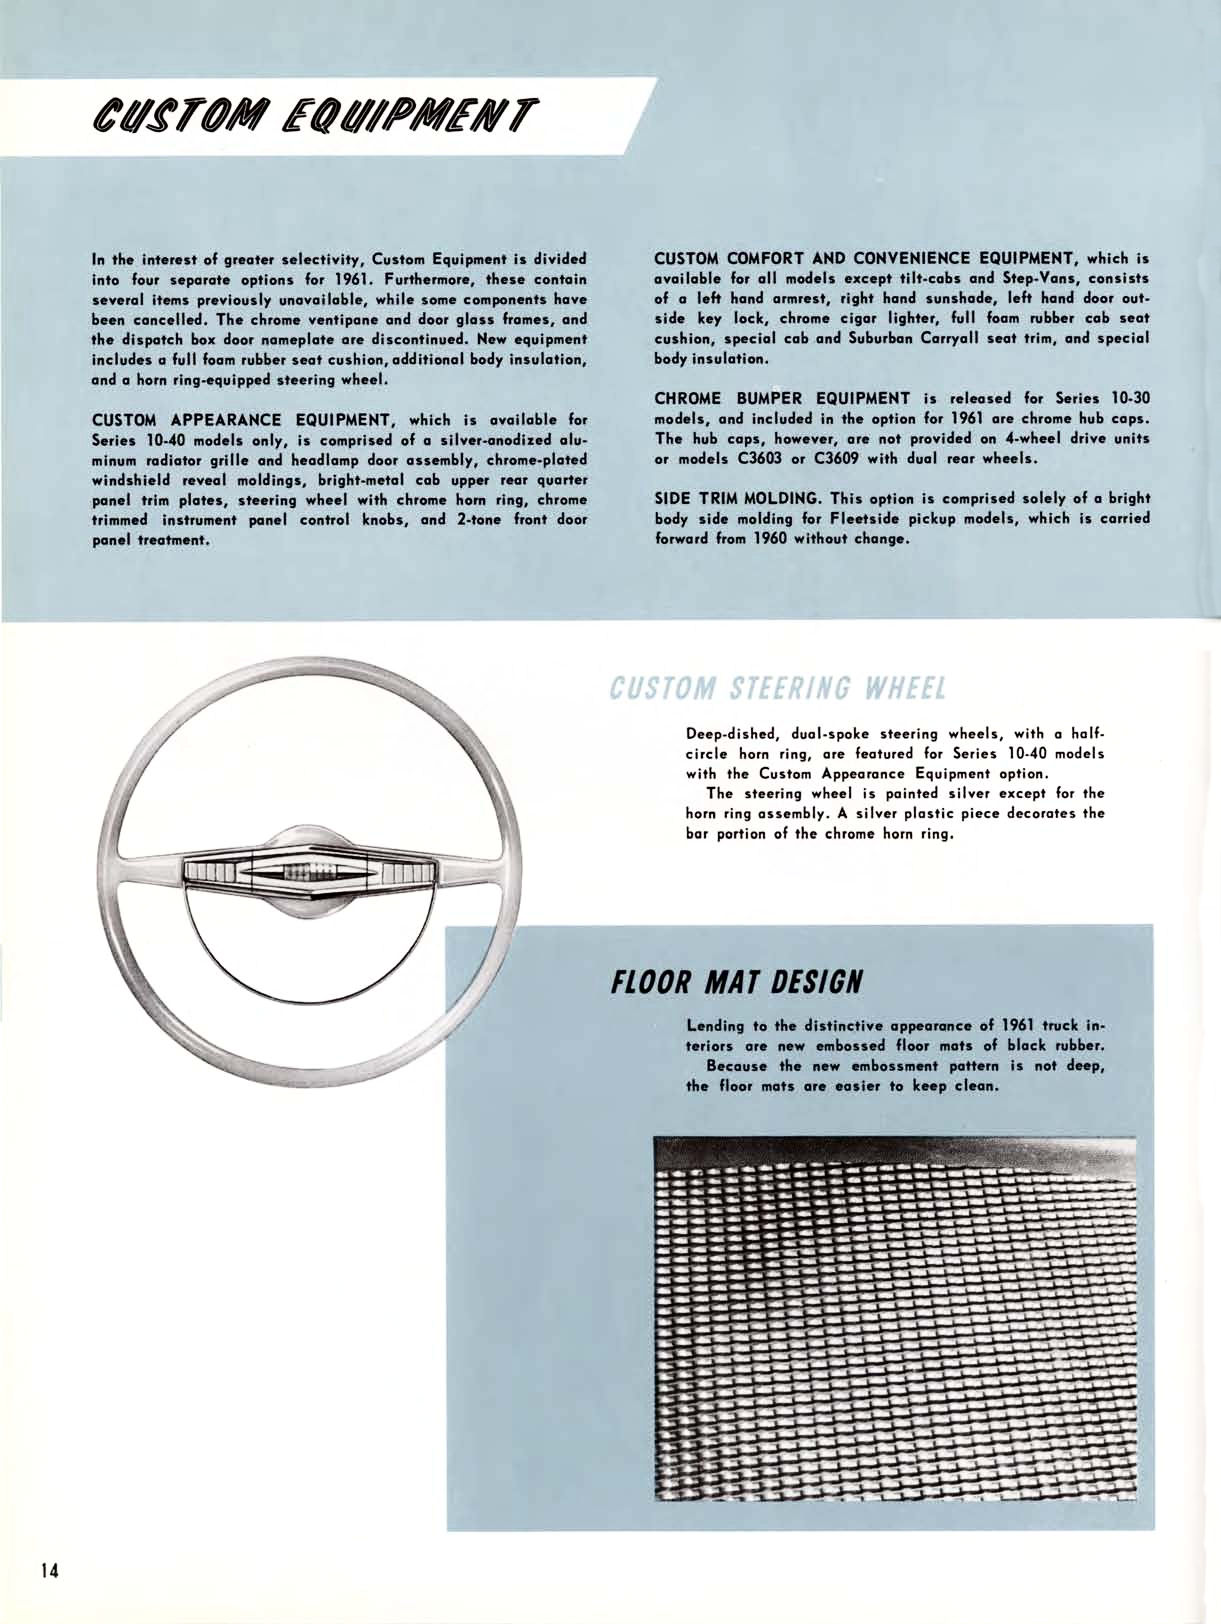 1961 Chevrolet Truck Engineering Features-14